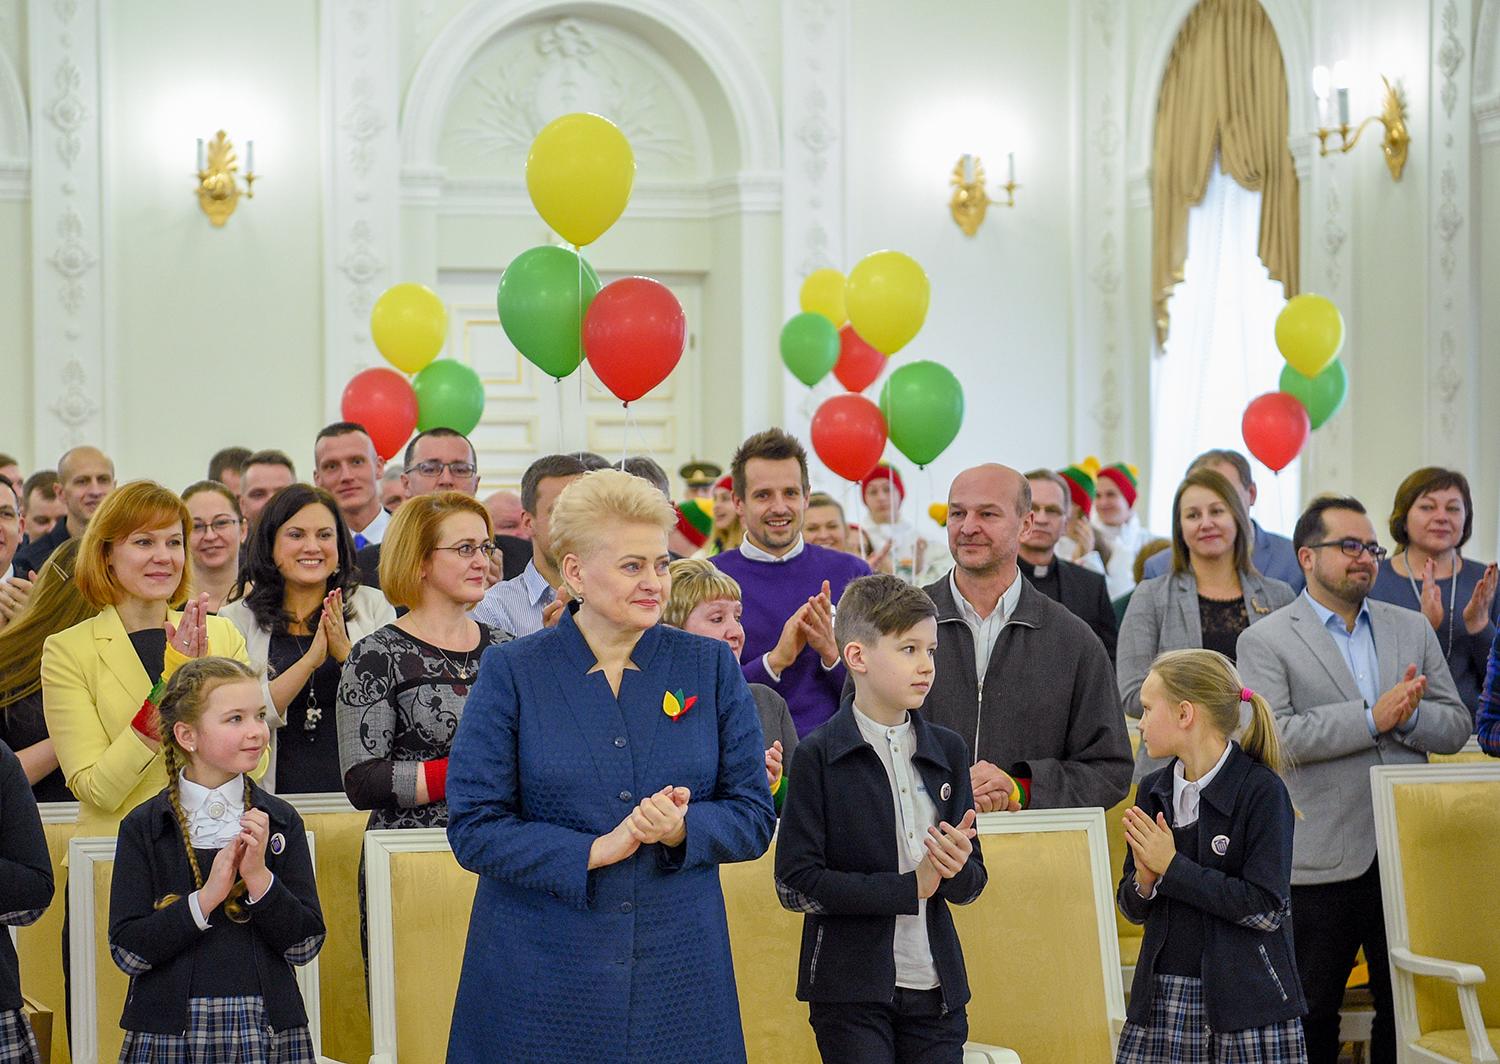 Sumaniausios idėjos – ir iš Ukmergės rajono / Prezidentė Dalia Grybauskaitė apdovanojo sumaniausius akcijos „Vasario 16-ąją švęsk linksmai ir išradingai“ idėjų iniciatorius. Prezidento kanceliarijos nuotr./Robertas Dačkus